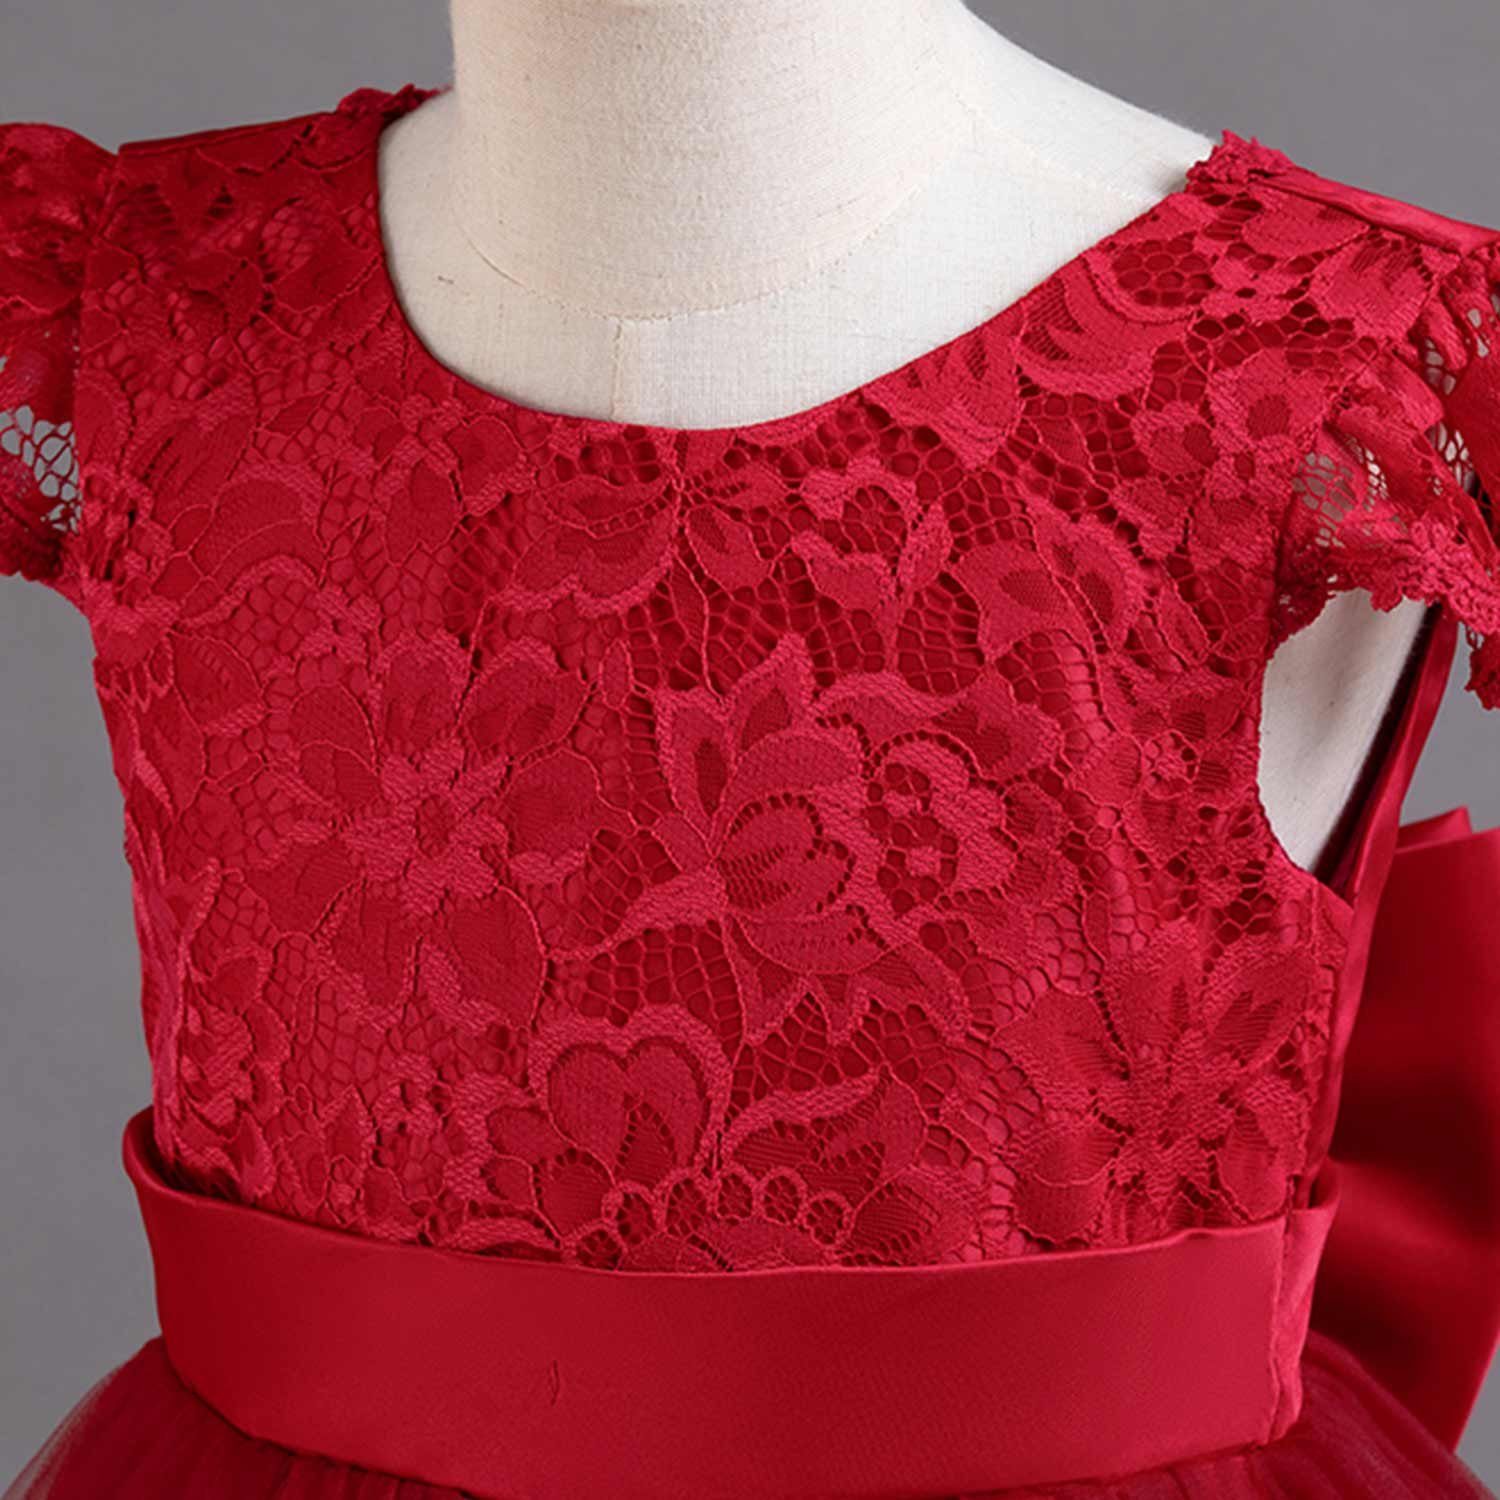 Tüllkleider Blumenmädchen Prinzessinnenkleid Rot Kinderkleider Abendkleid Daisred